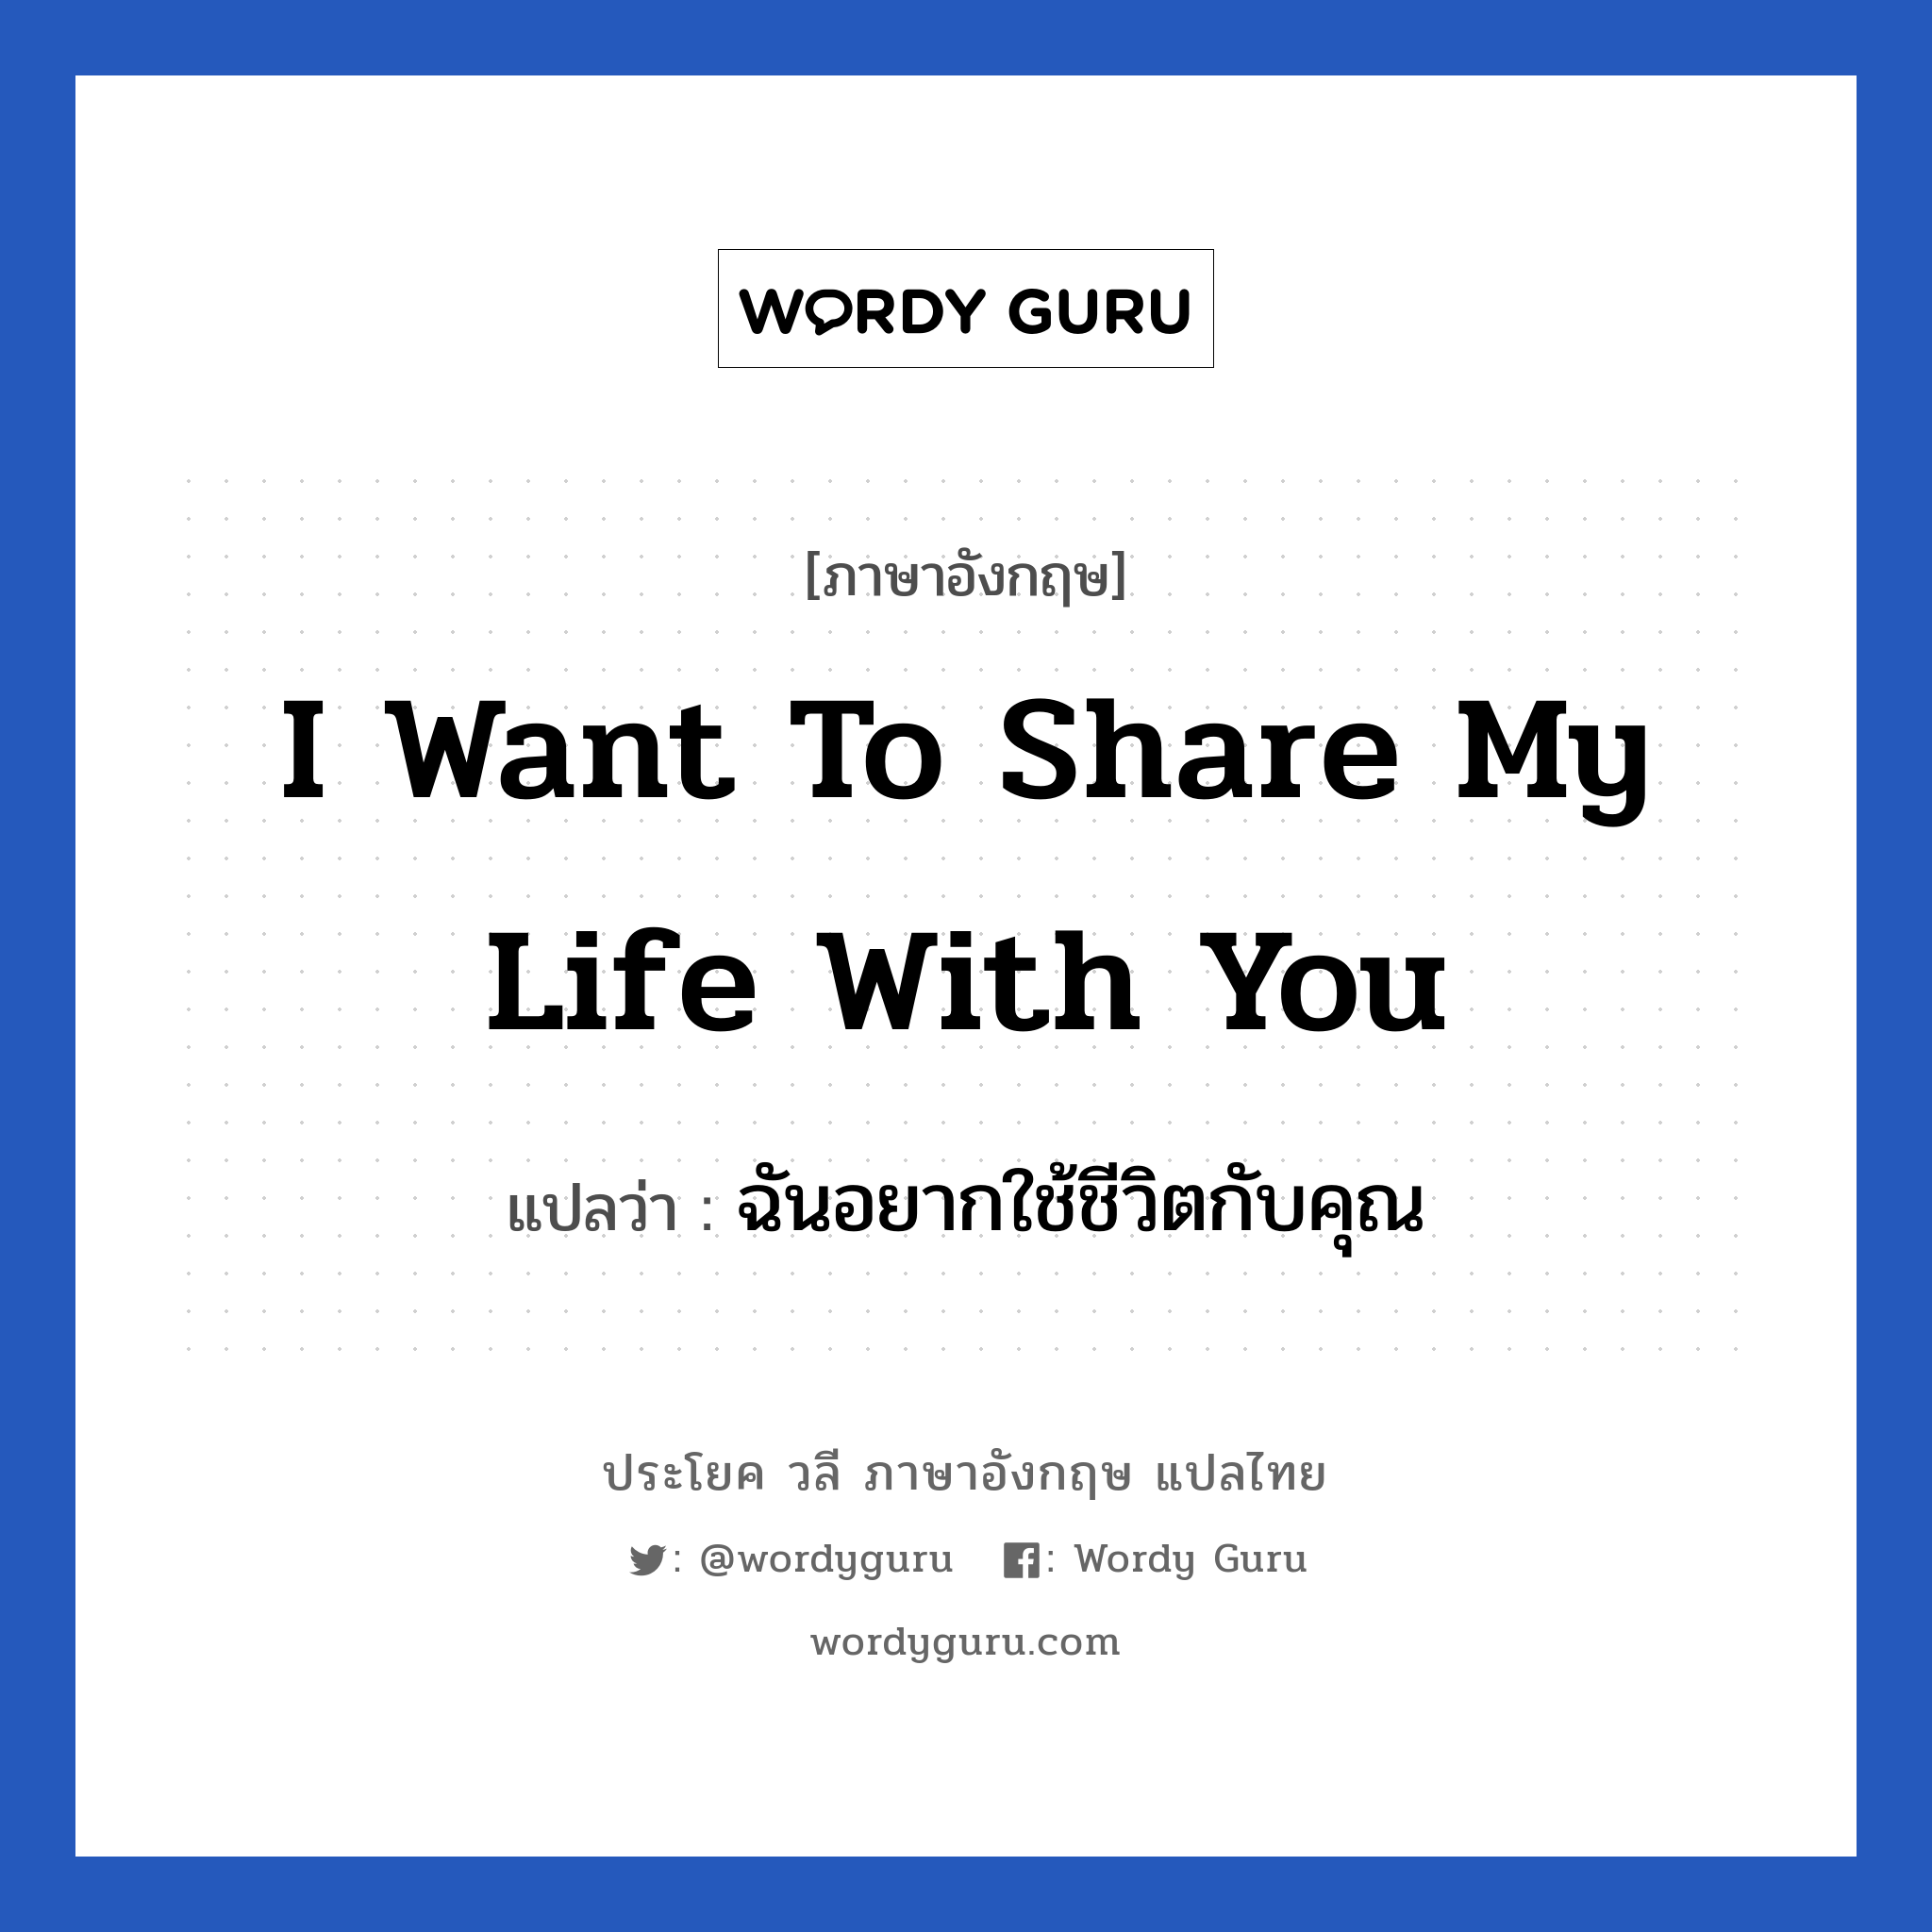 ฉันอยากใช้ชีวิตกับคุณ ภาษาอังกฤษ?, วลีภาษาอังกฤษ ฉันอยากใช้ชีวิตกับคุณ แปลว่า I want to share my life with you หมวด ความรัก